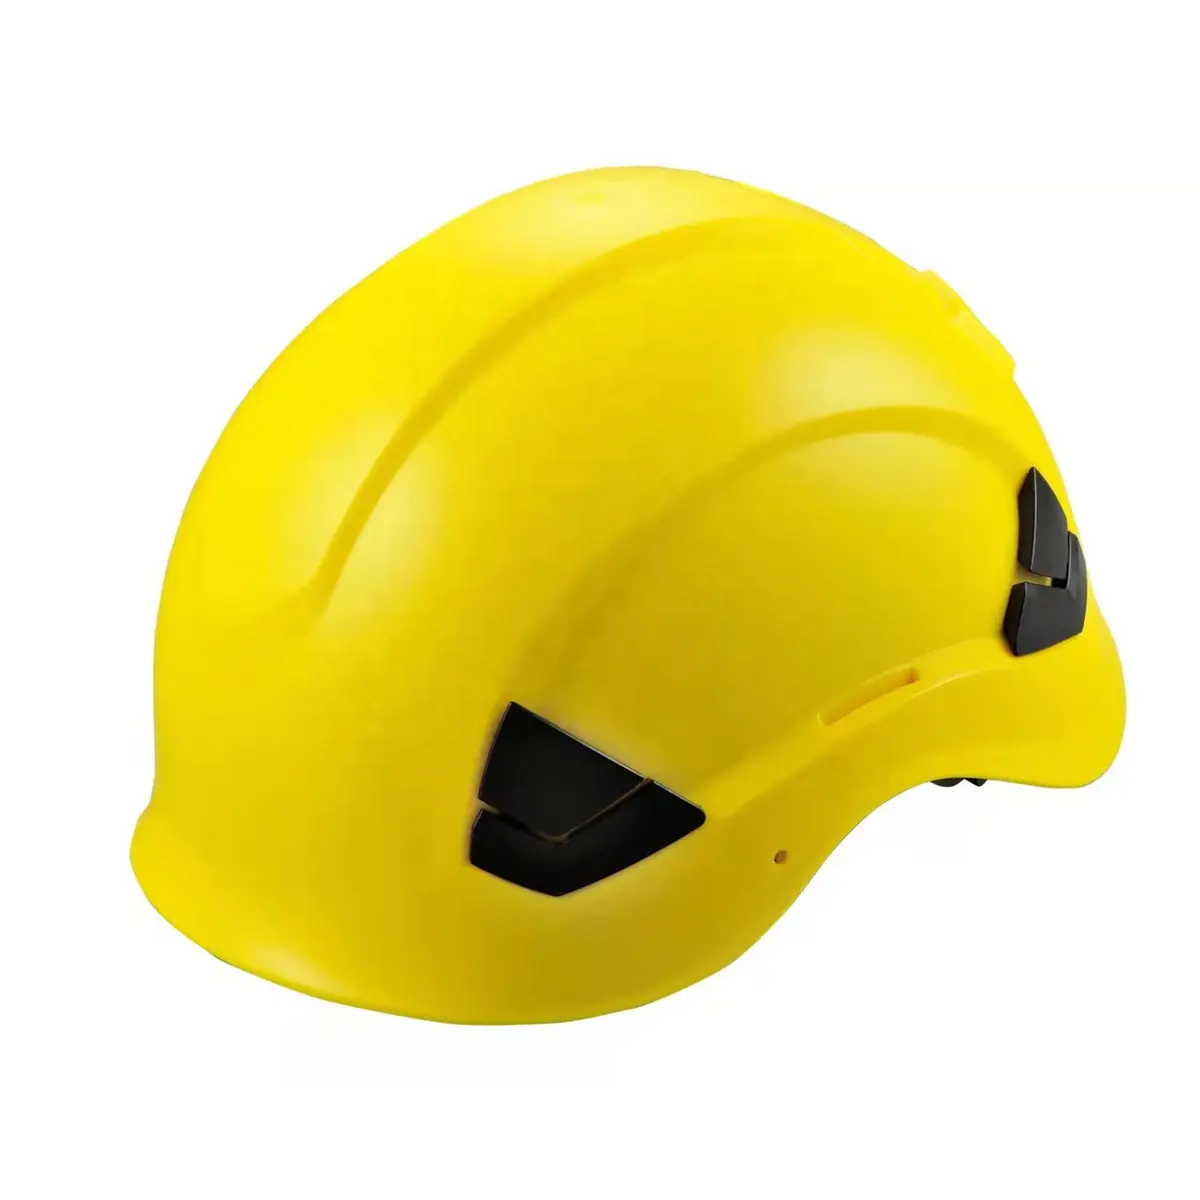 Wejump casco de seguridad de escalada con precio de fábrica PPE deportes al por menor